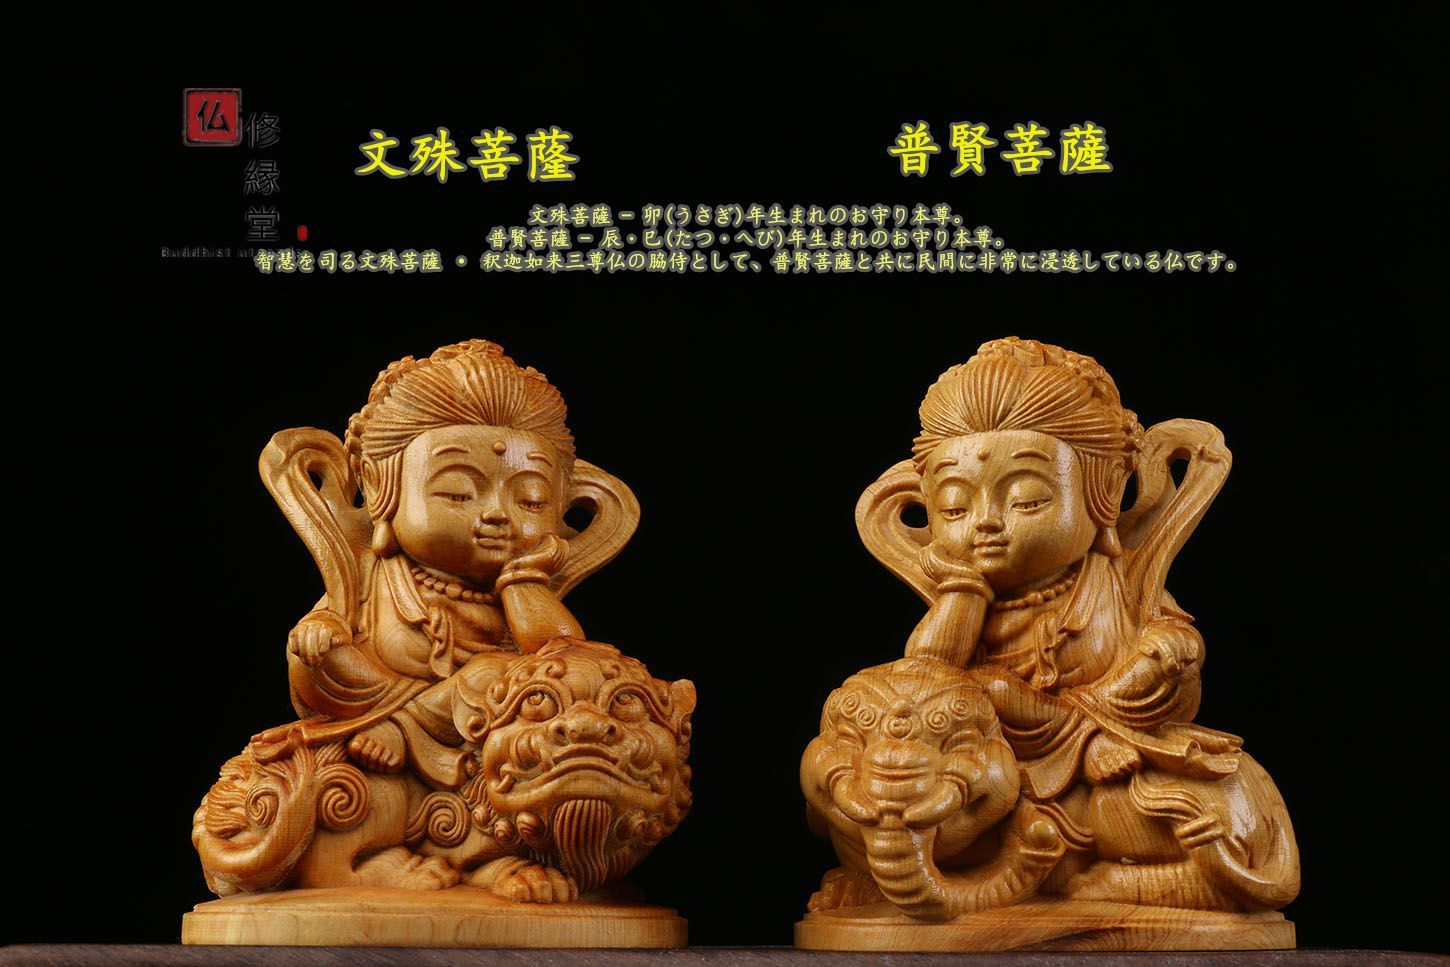 高級製品! 文殊菩薩 普賢菩薩一式 置物 仏教 工芸品 細密彫刻 木彫仏像-